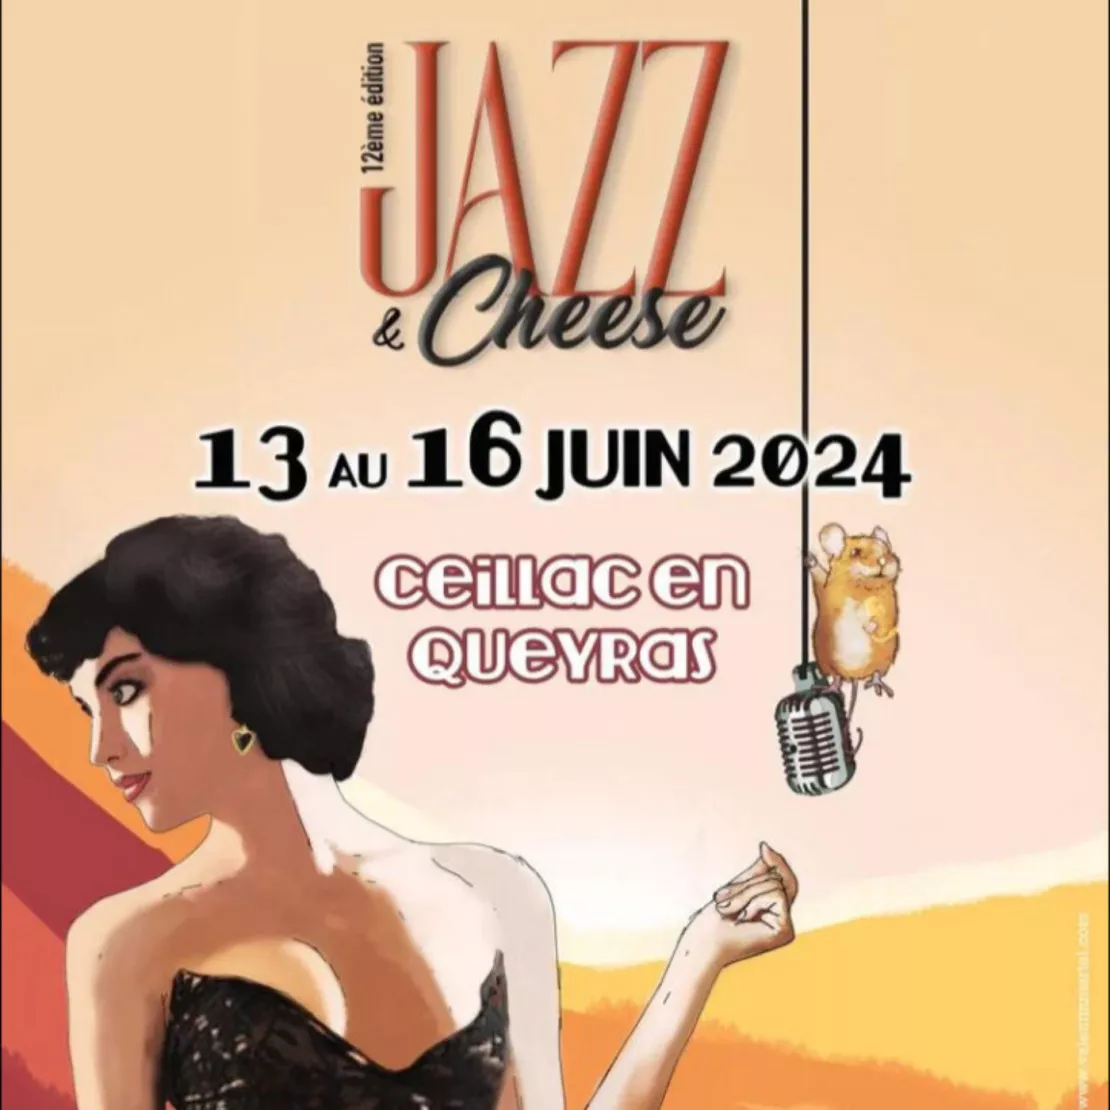 Près de Chez Vous : Festival Jazz and Cheese avec Diane Tell jeudi 13 juin à Ceillac. Interview.